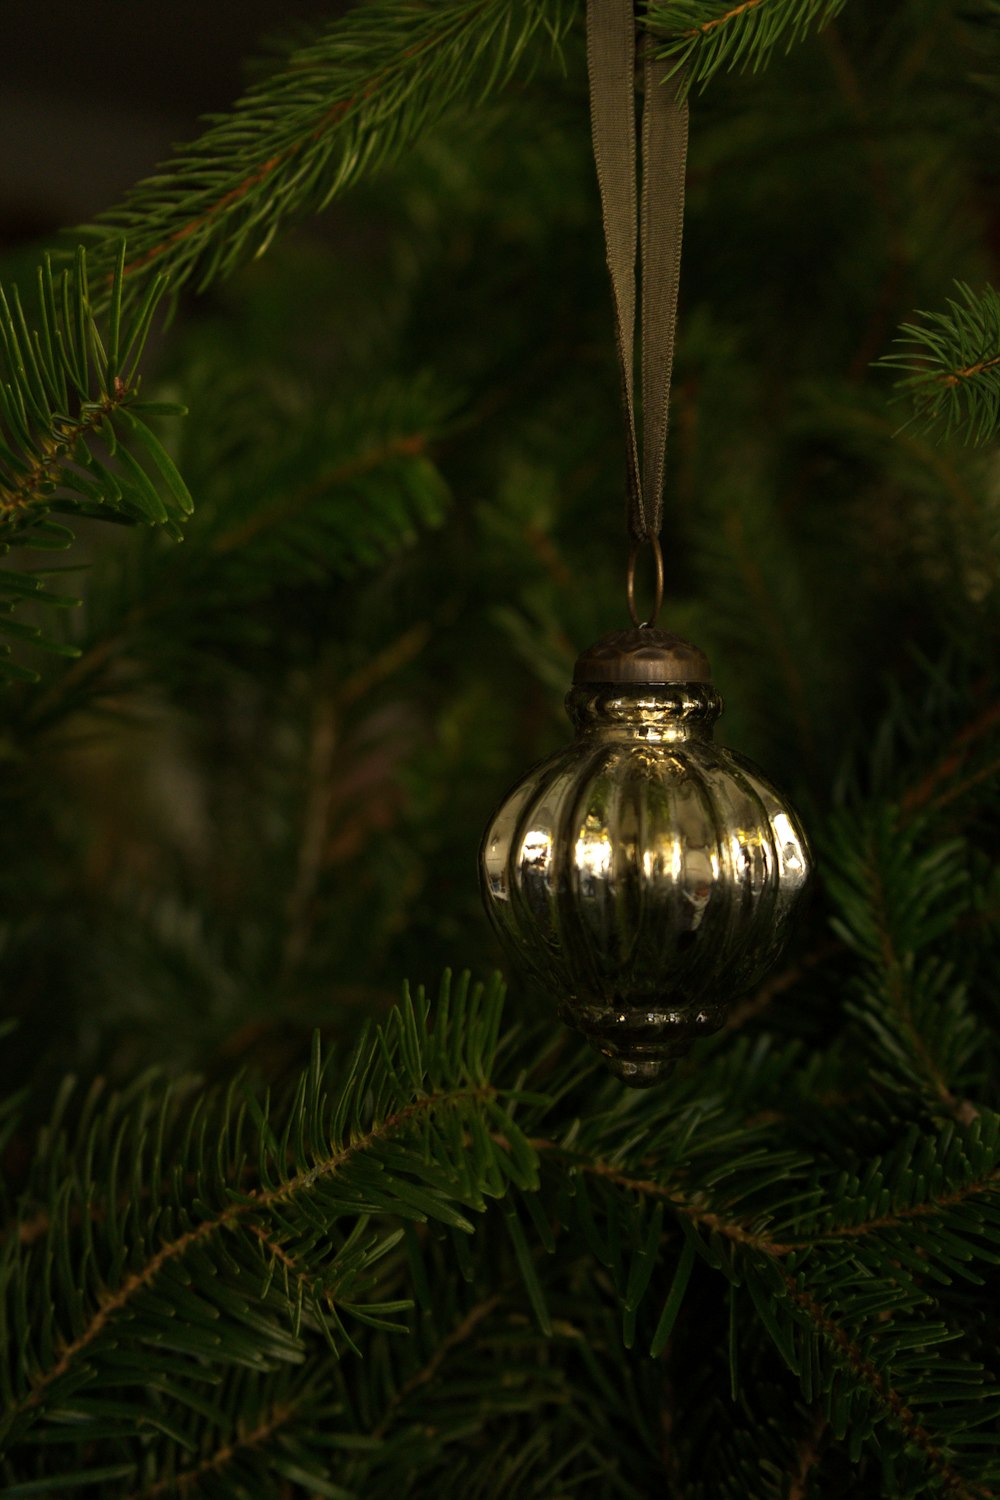 Un ornement en argent suspendu à un arbre de Noël